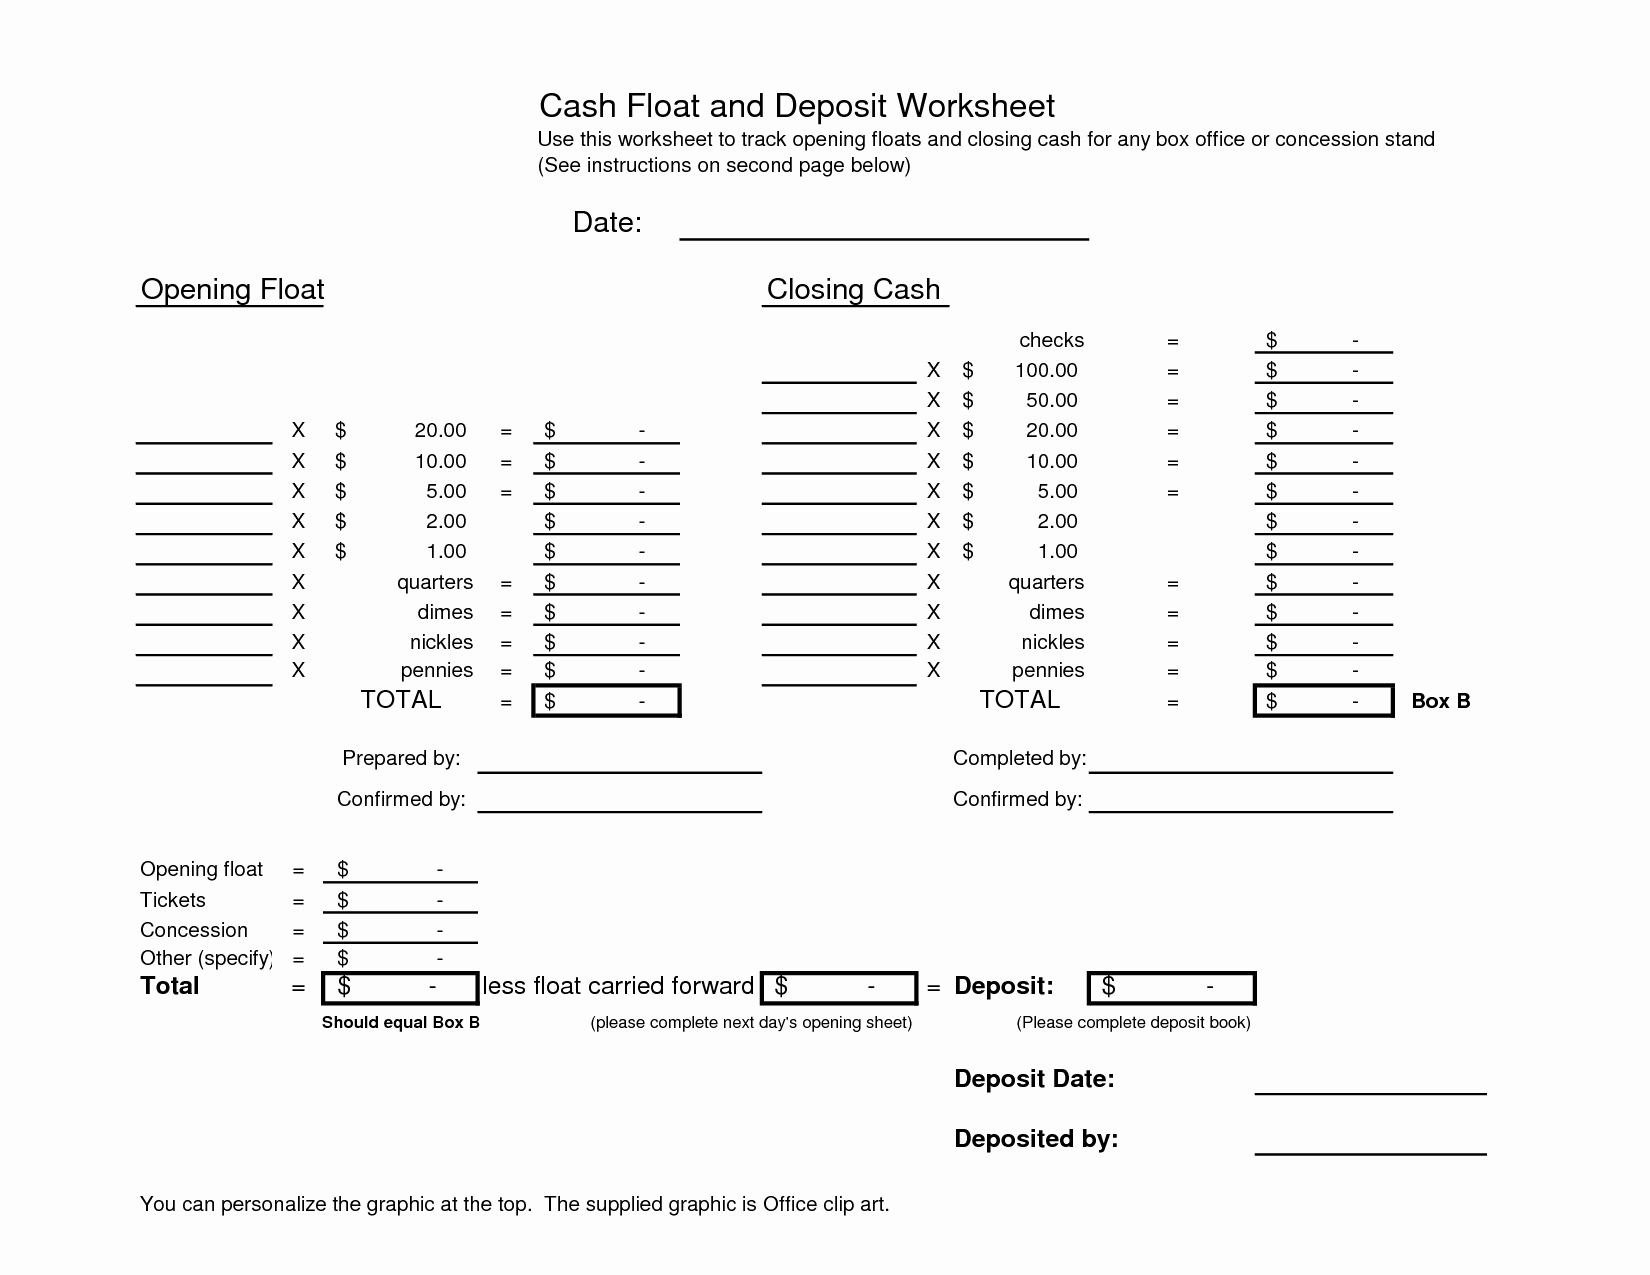 Cash Drawer Balance Sheet Template Awesome 19 Best Of Cash Count Worksheet Cash Register